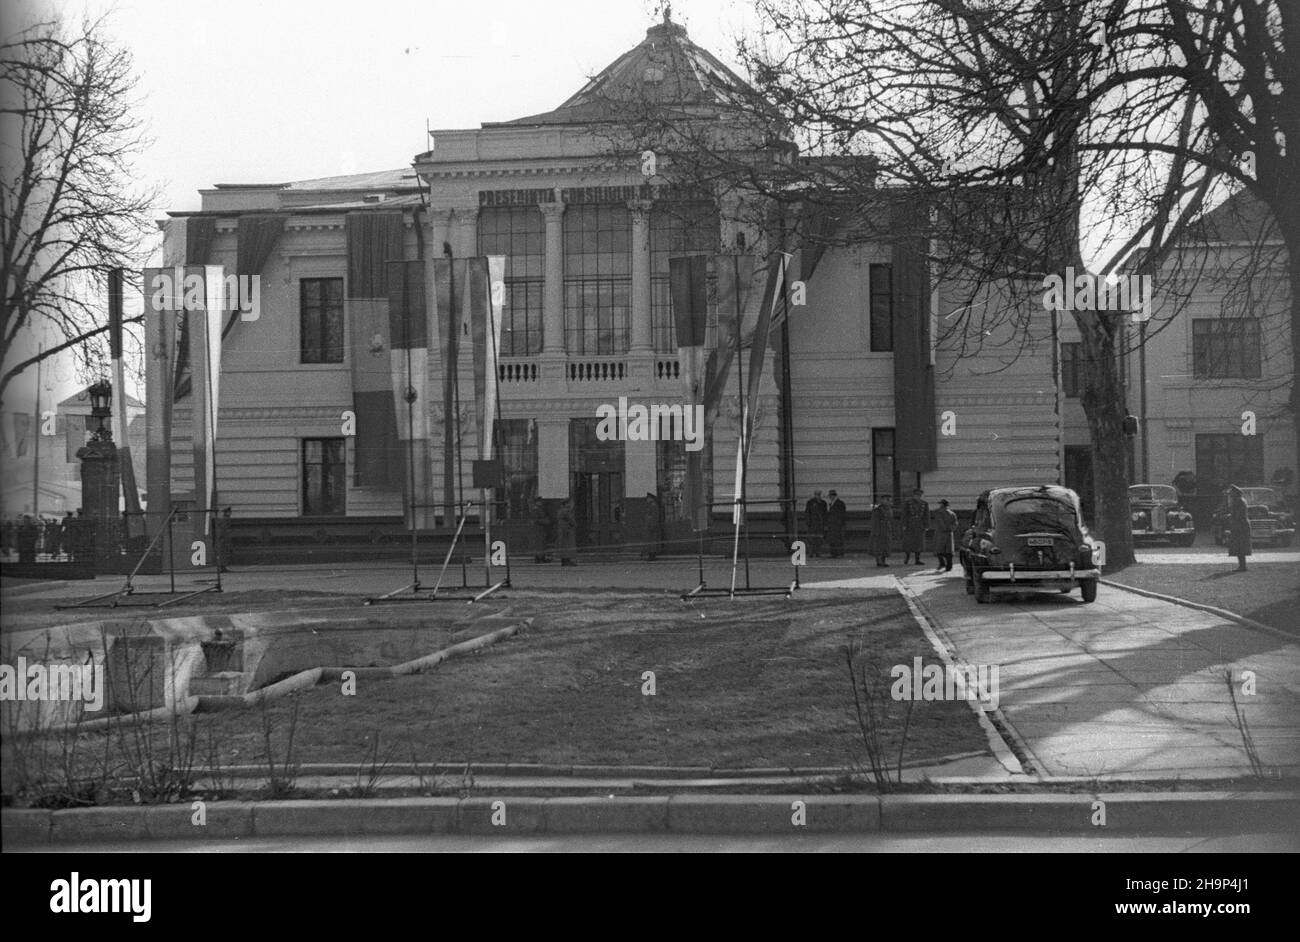 Rumunia, Bukareszt, 1949-01-25. Pa³ac Wielkiego Zgromadzenia Narodowego Rumuñskiej Republiki Ludowej.   bk  PAP      Romania, Bucharest, Jan. 25, 1949. The Palace of the Romanian People's Republic Great National Assembly.   bk  PAP Stock Photo